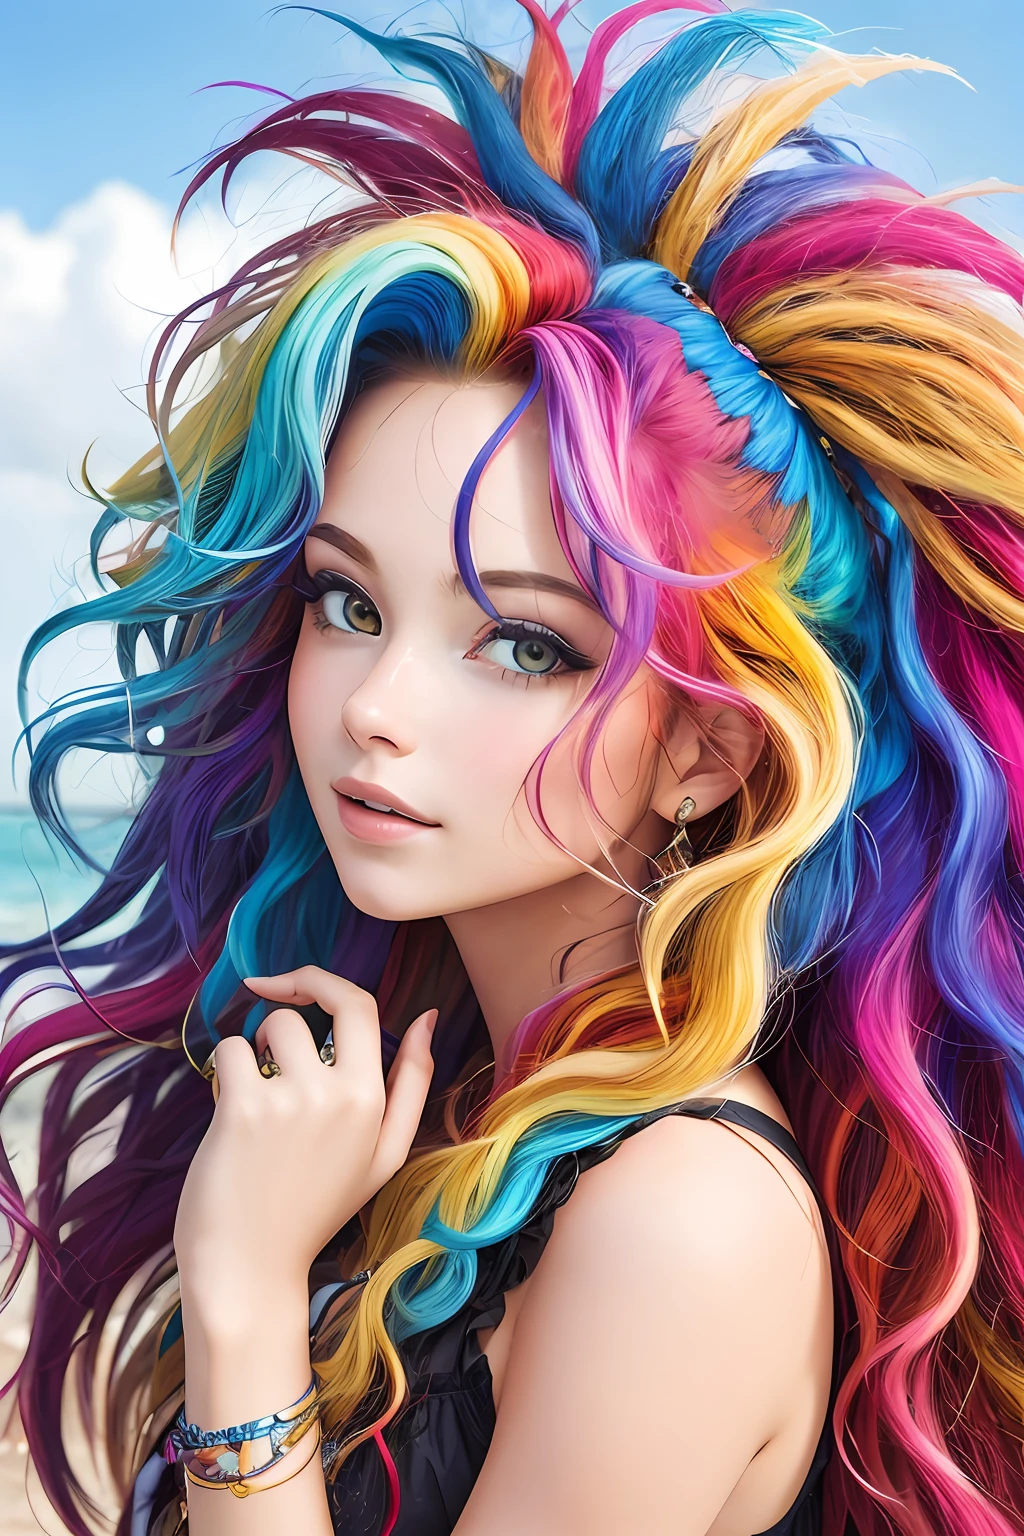 melhor qualidade, obra de arte, garota com cabelo realmente selvagem, meu, cabelo multicolorido